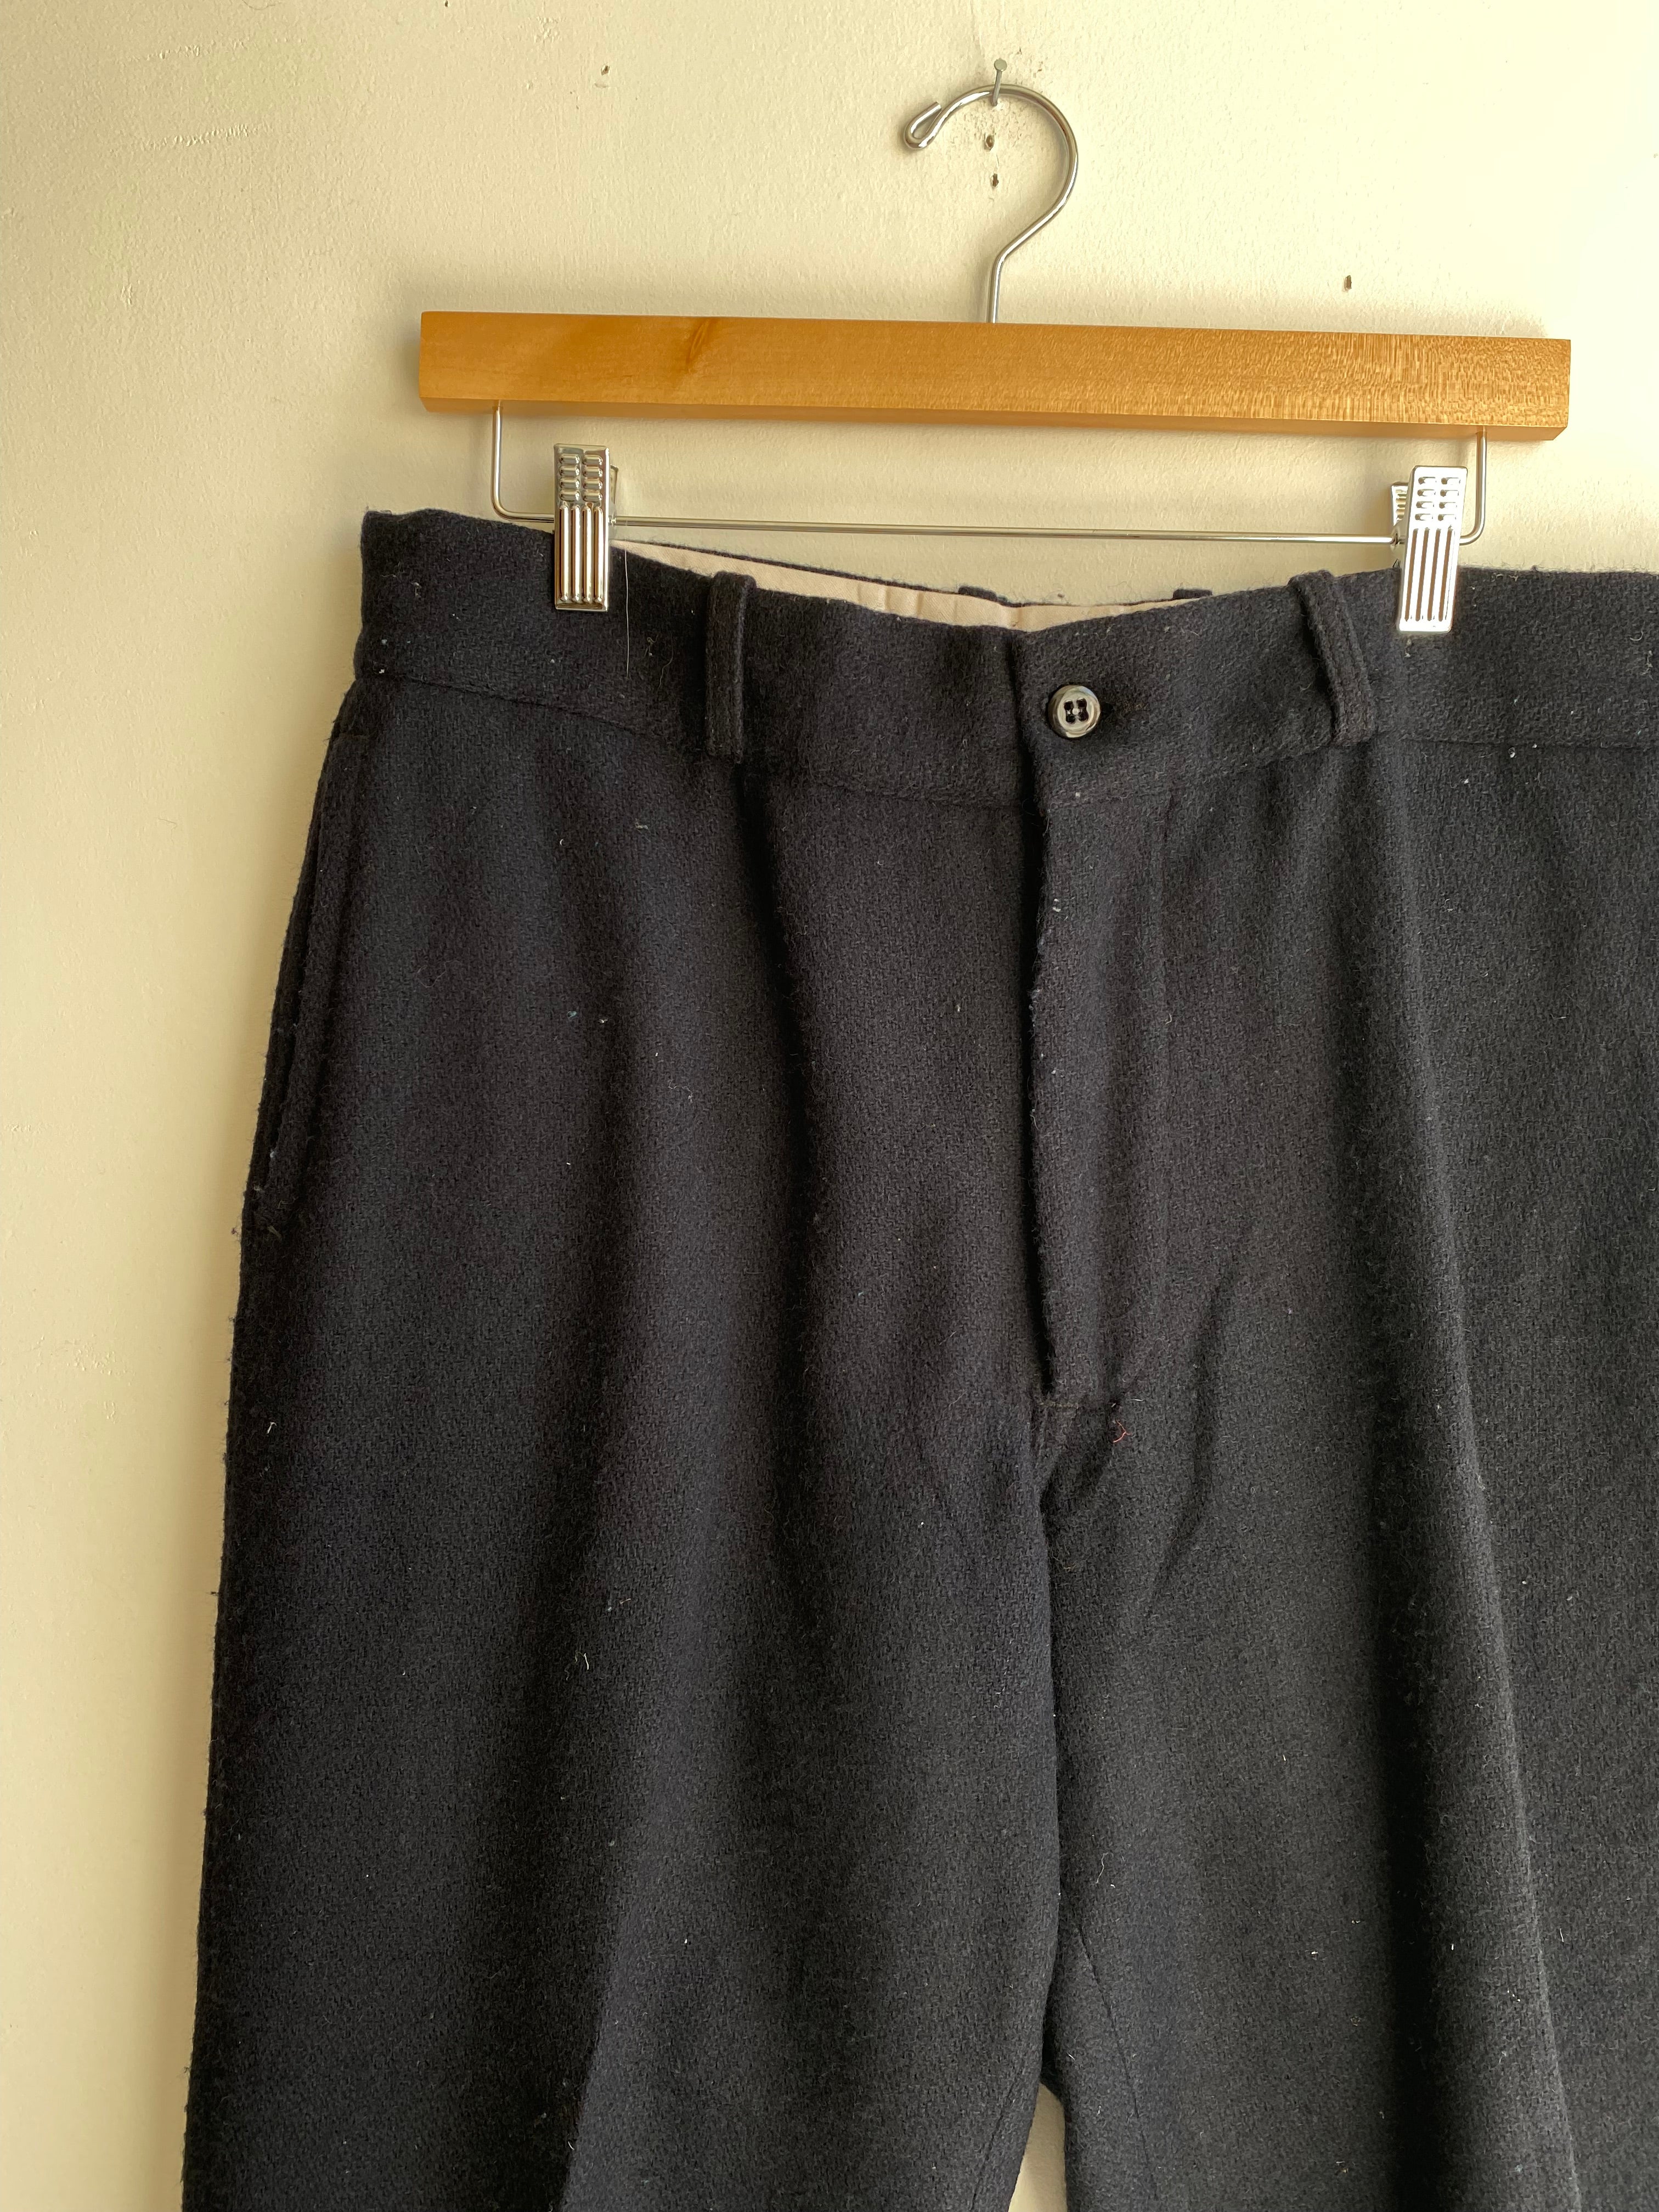 1960s Johnson Heavy Wool Trousers (33 x 30)